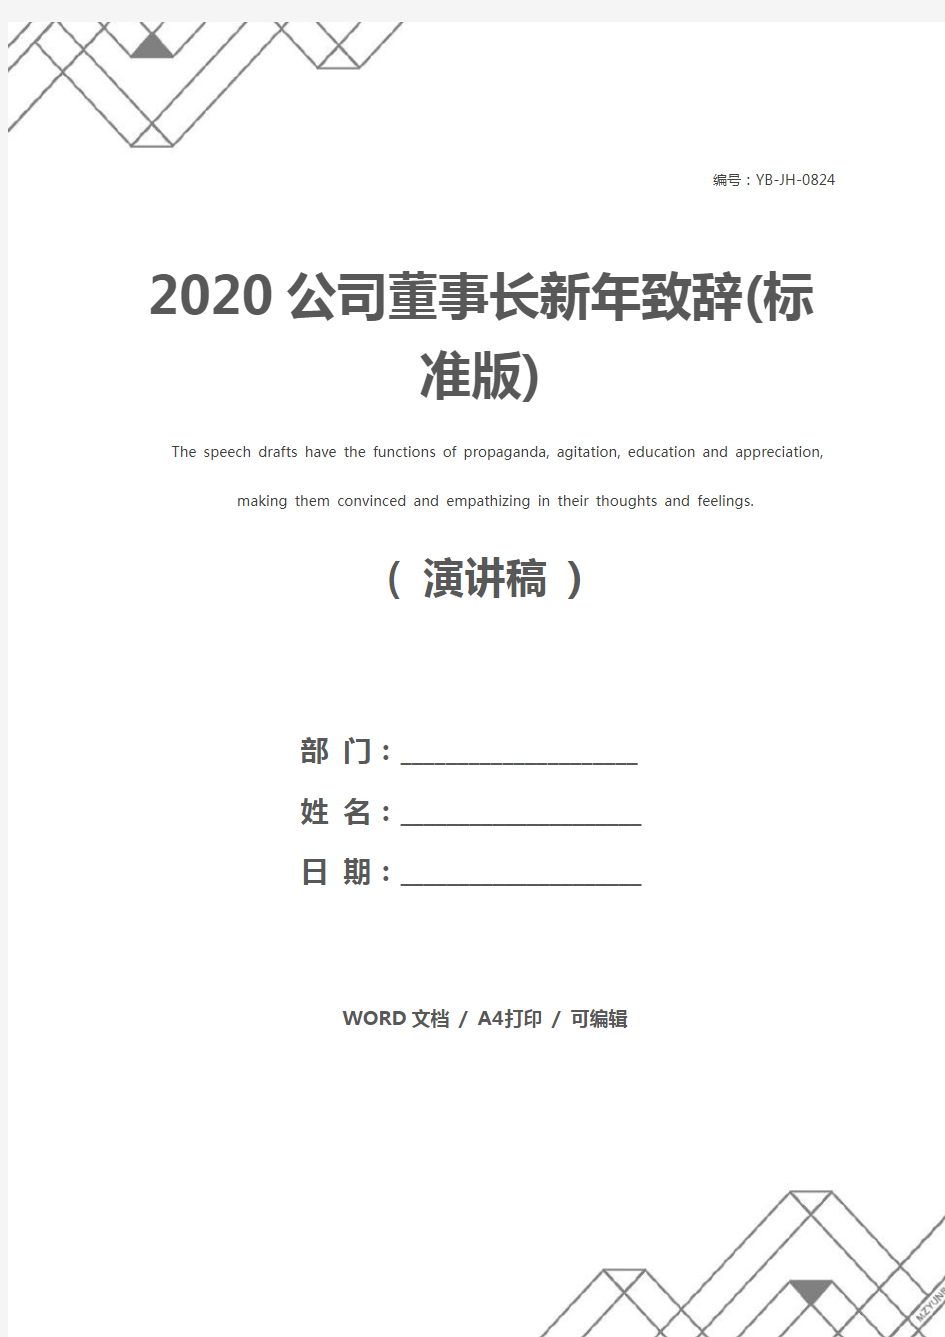 2020公司董事长新年致辞(标准版)